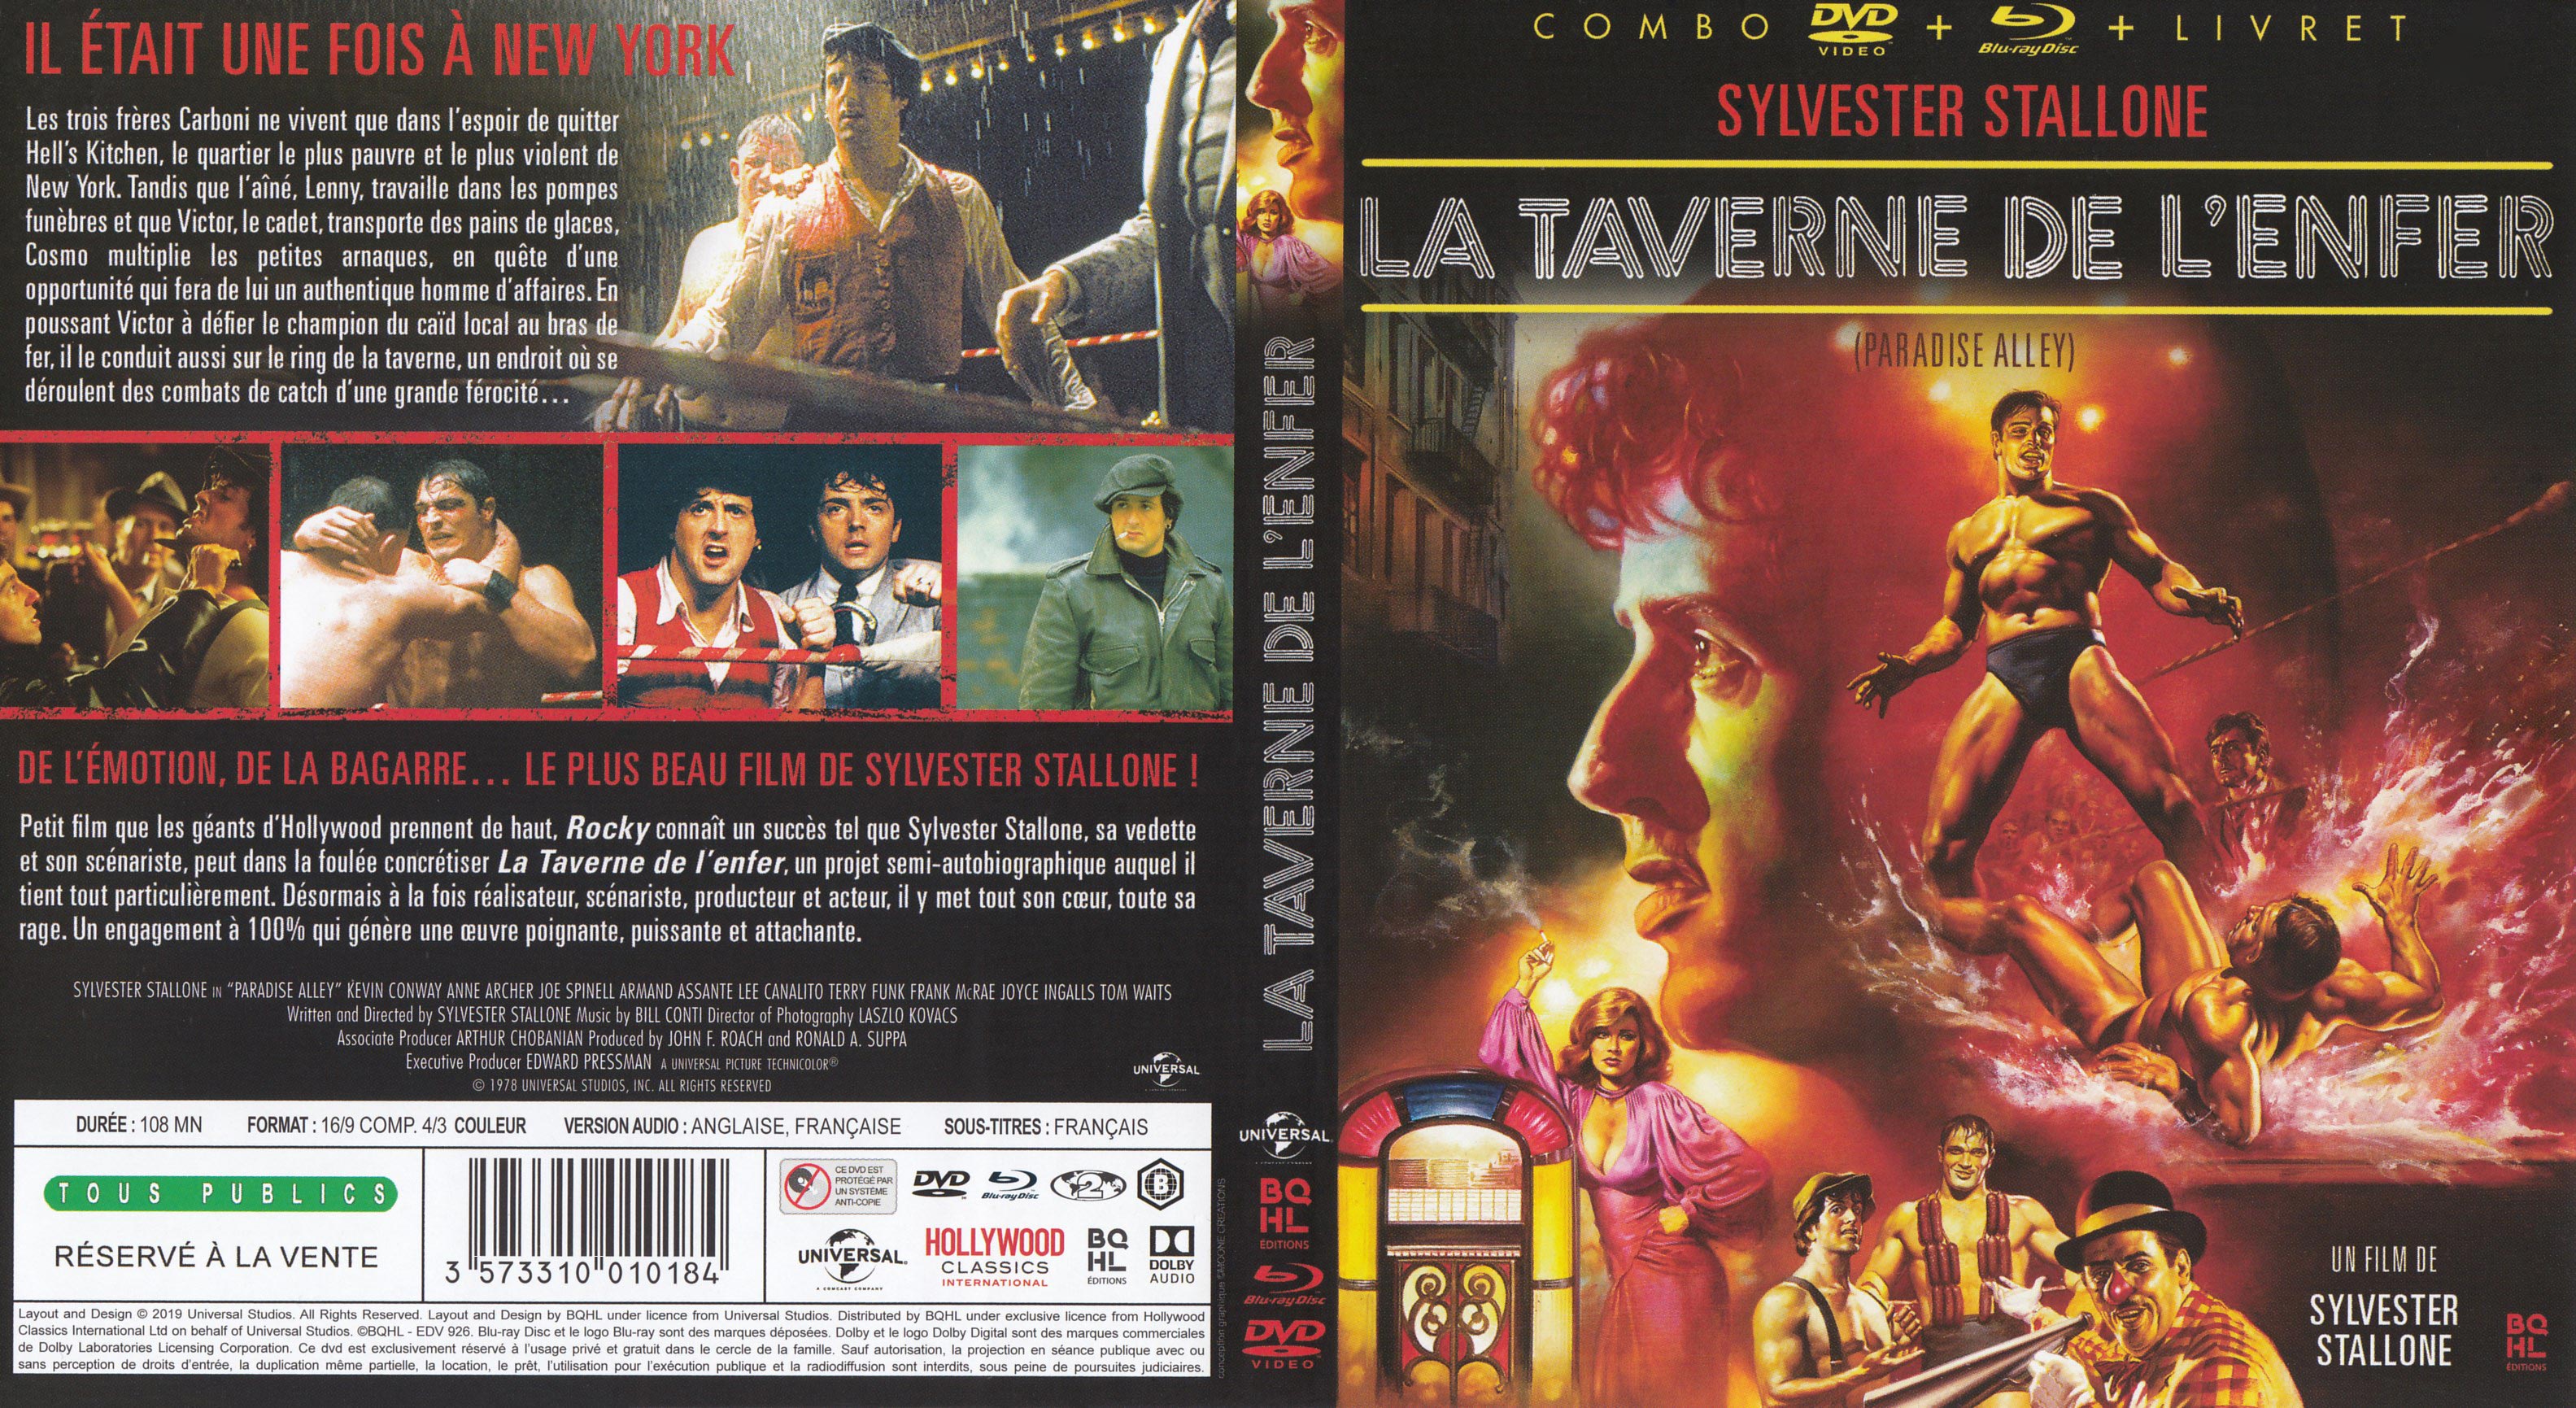 Jaquette DVD La taverne de l